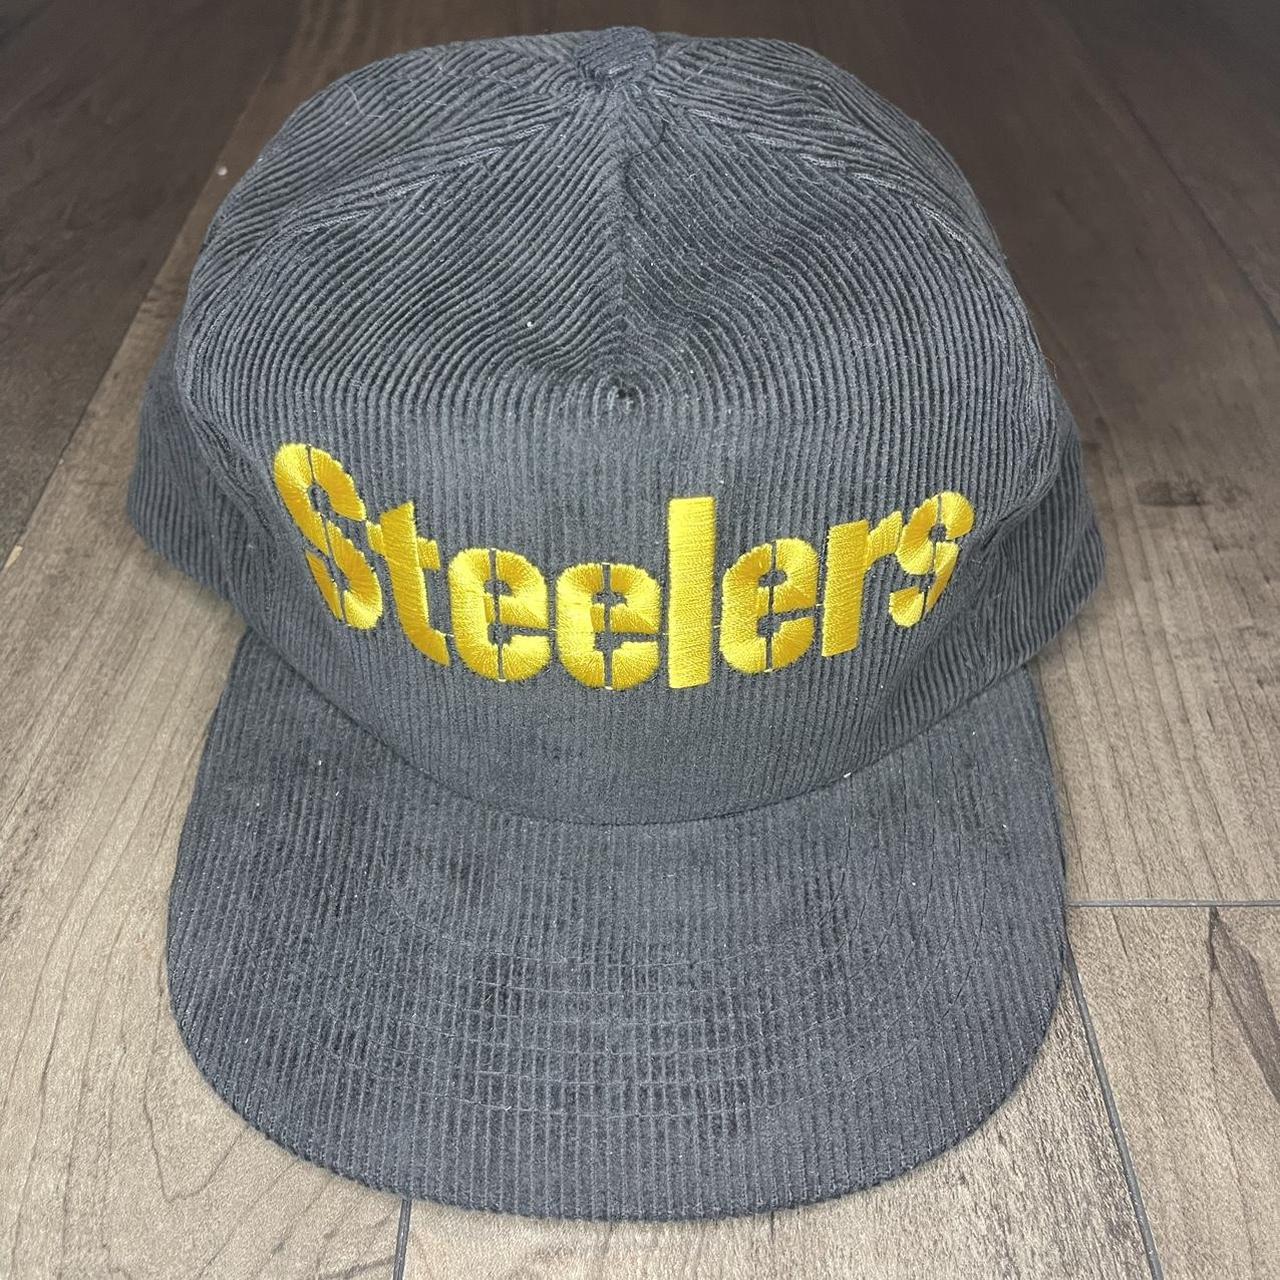 steelers corduroy hat